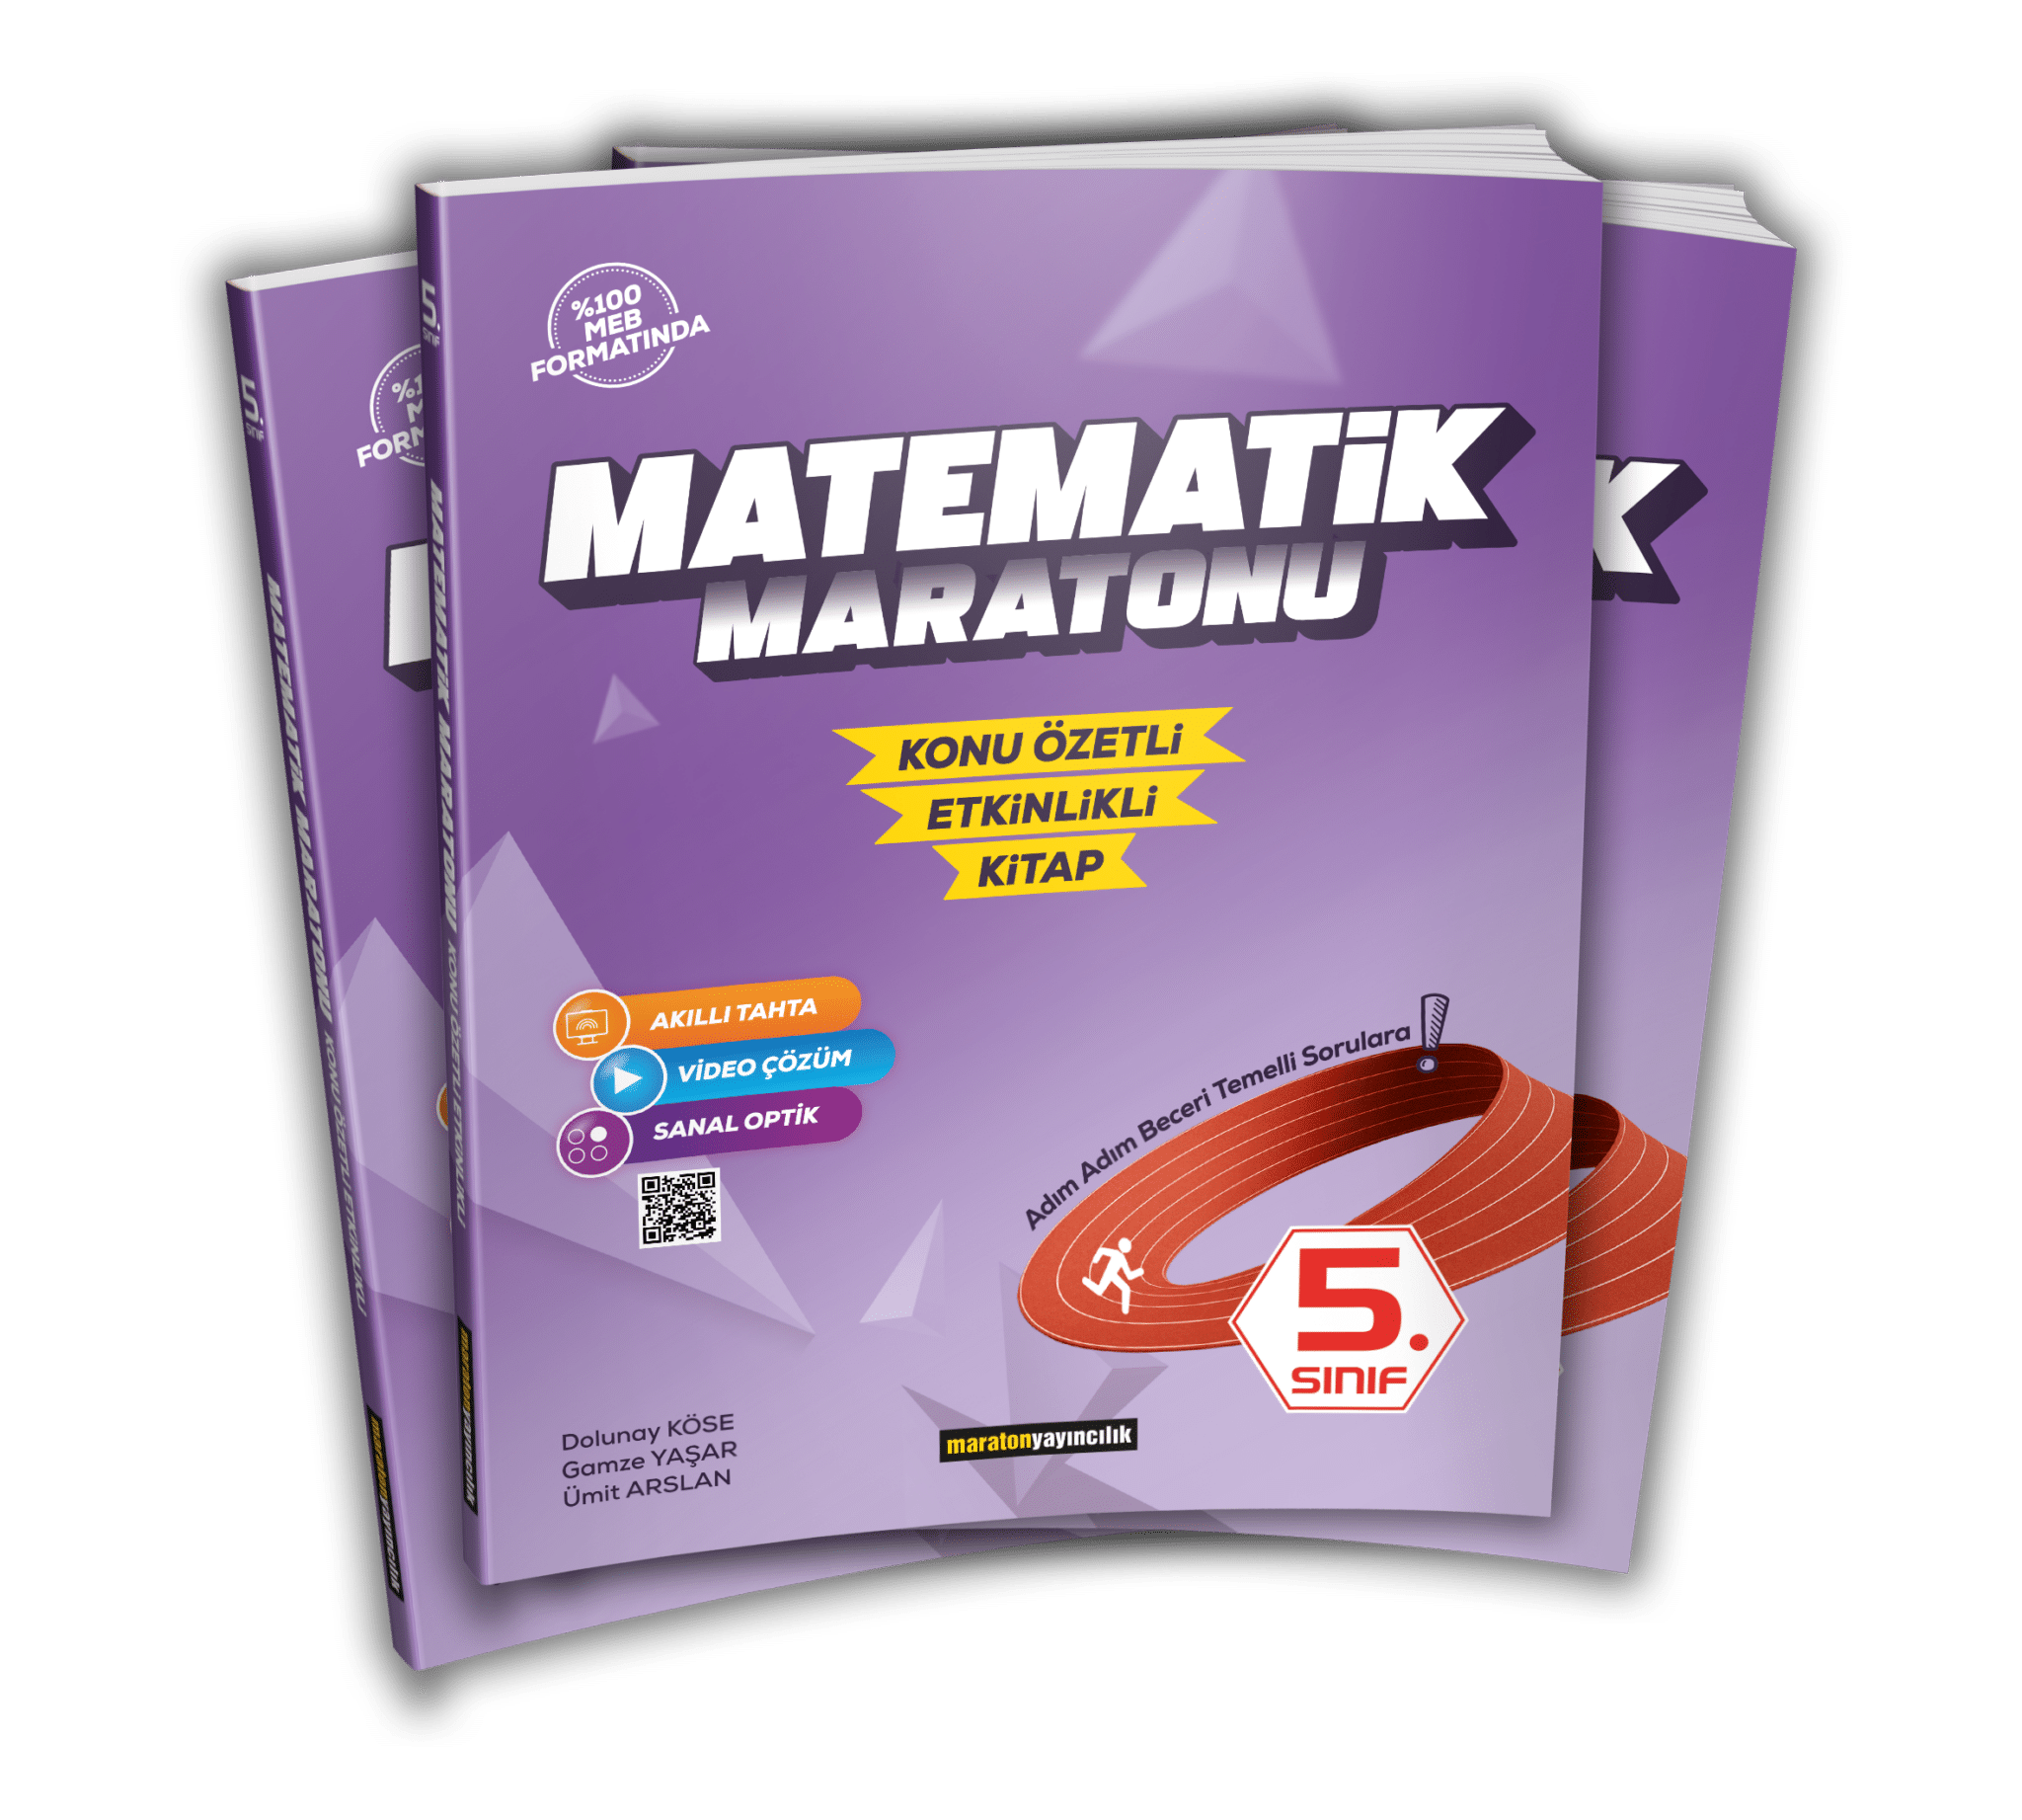 5. Sınıf Matematik Maratonu - Konu Özetli & Etkinlikli Kitap